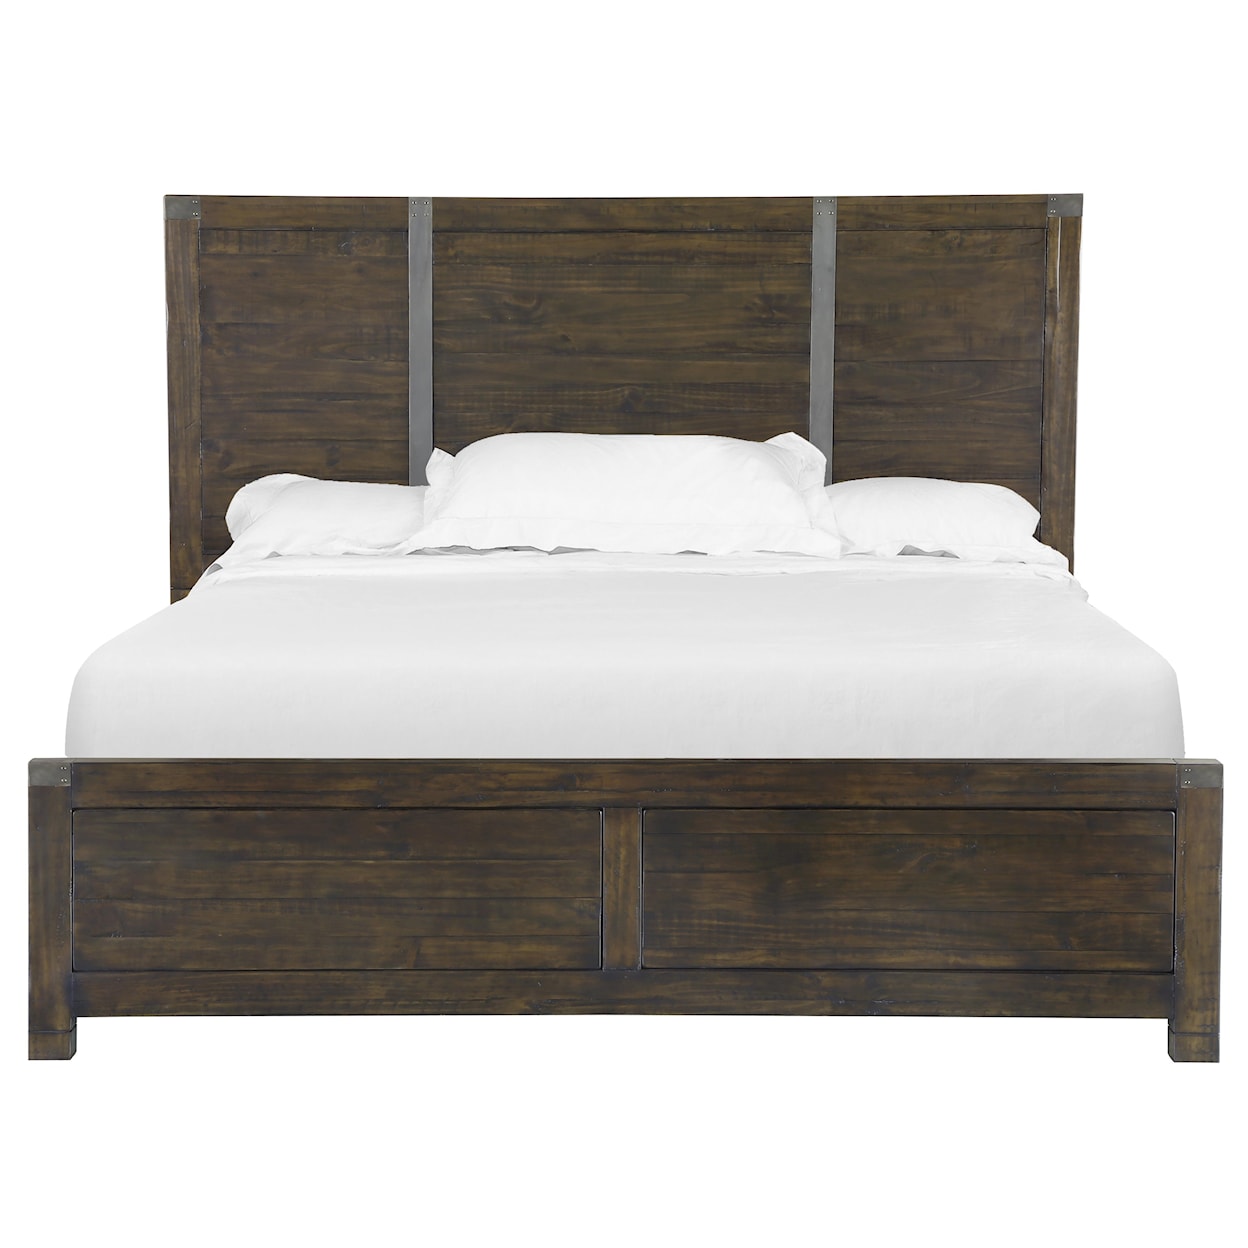 Belfort Select Pine Hill Bedroom Queen Panel Bed